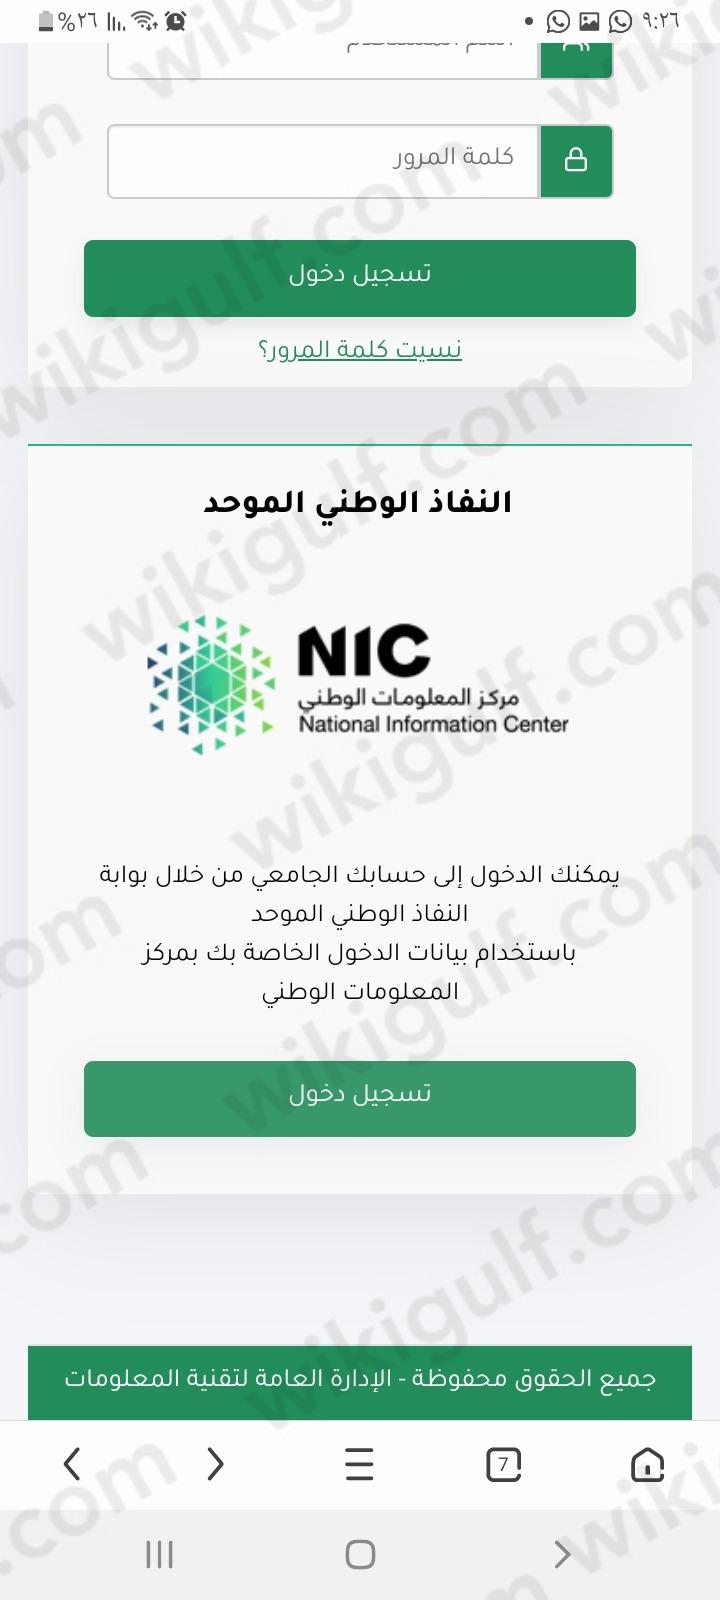 الدخول الموحد عبر النفاذ الوطني جامعة الملك عبدالعزيز